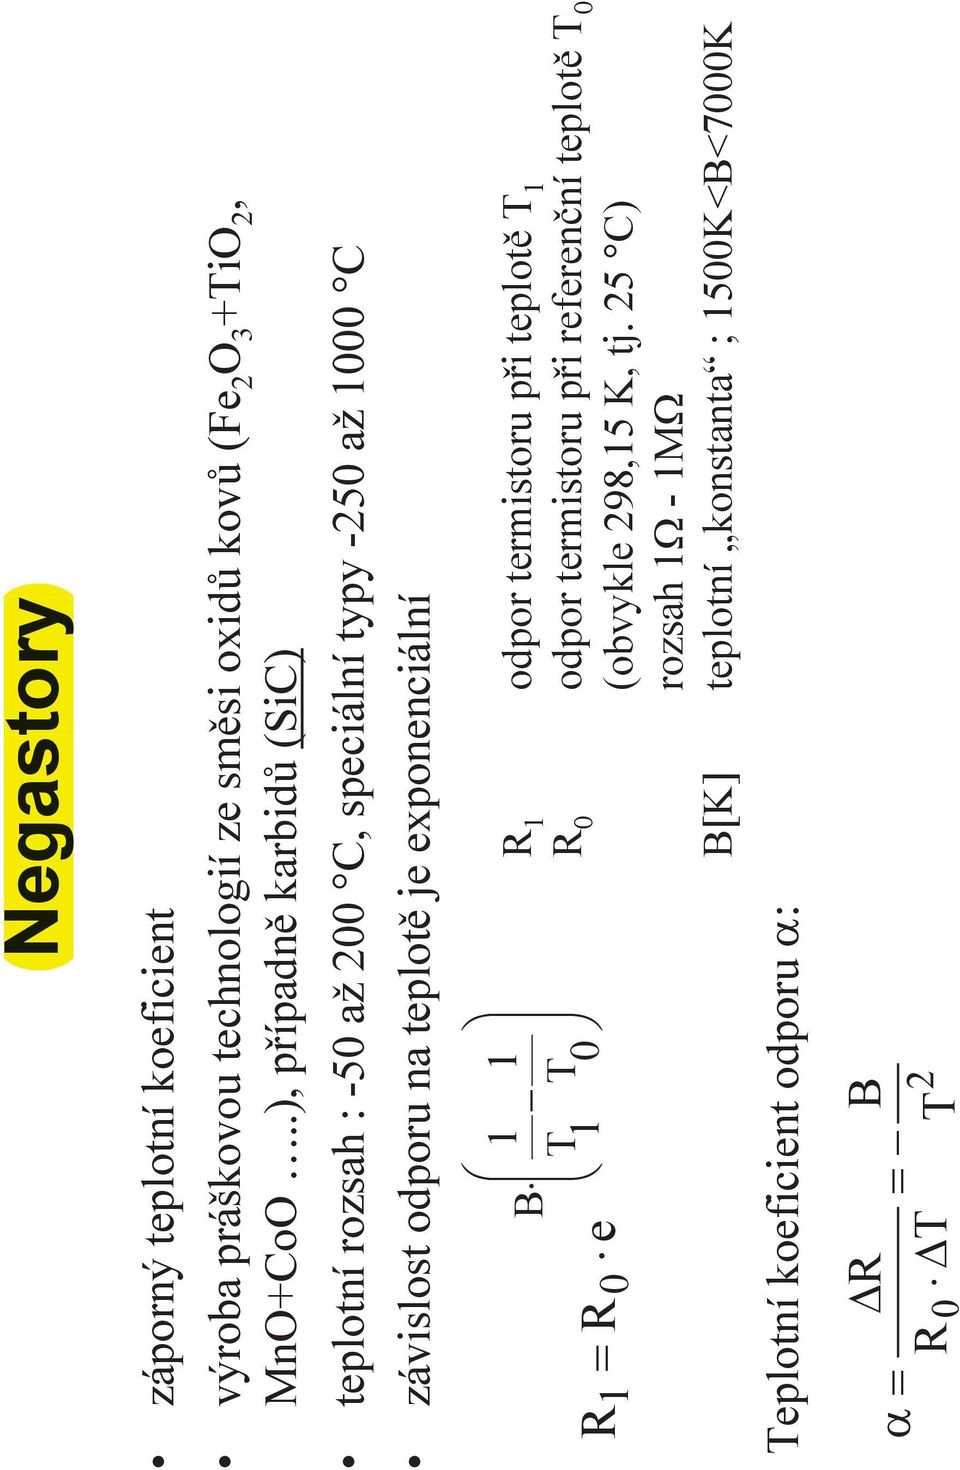 exponenci+ln) æ ç 1 1 B - ç T T = è 1 0 1 R 0 e Teplotn) koeficient odporu a: ö ø R 1 odpor termistoru p0i teplot$ T 1 R 0 odpor